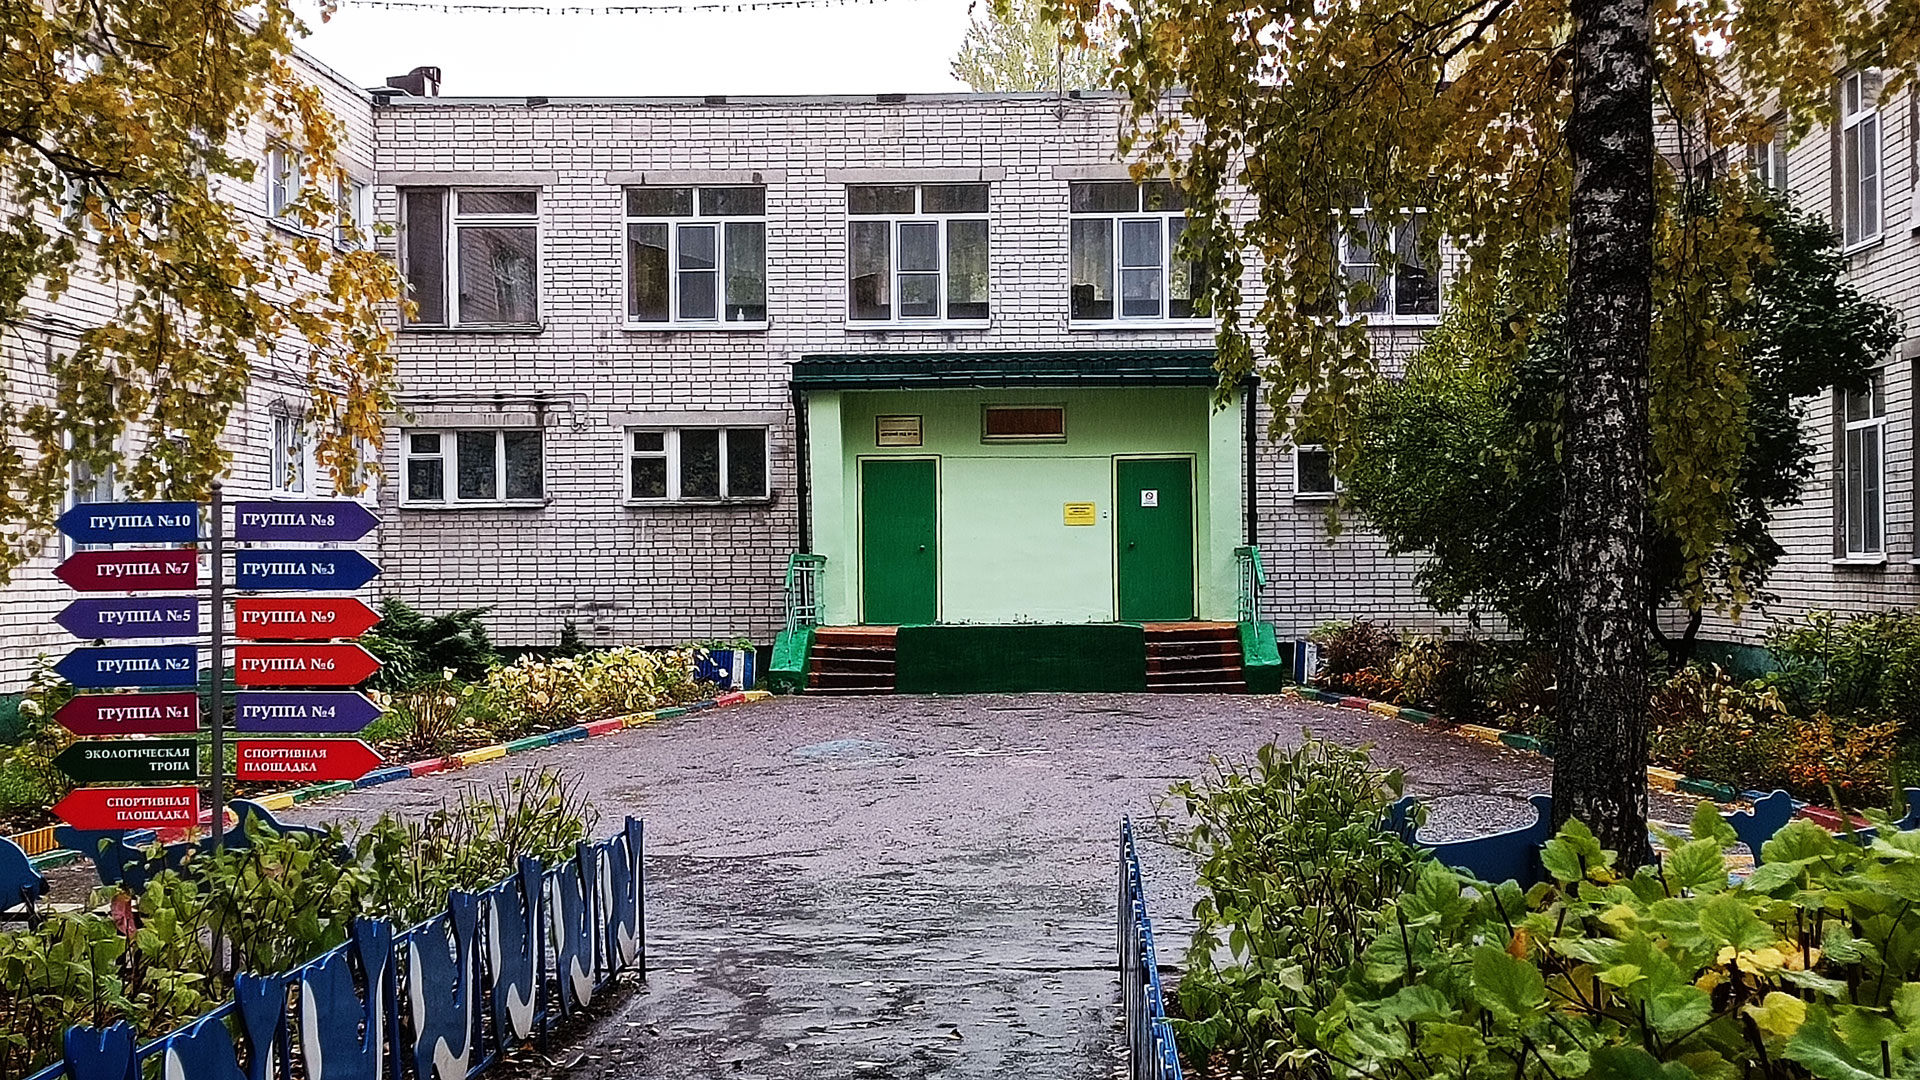 специализированный дом ребенка 2 ярославль фото здания